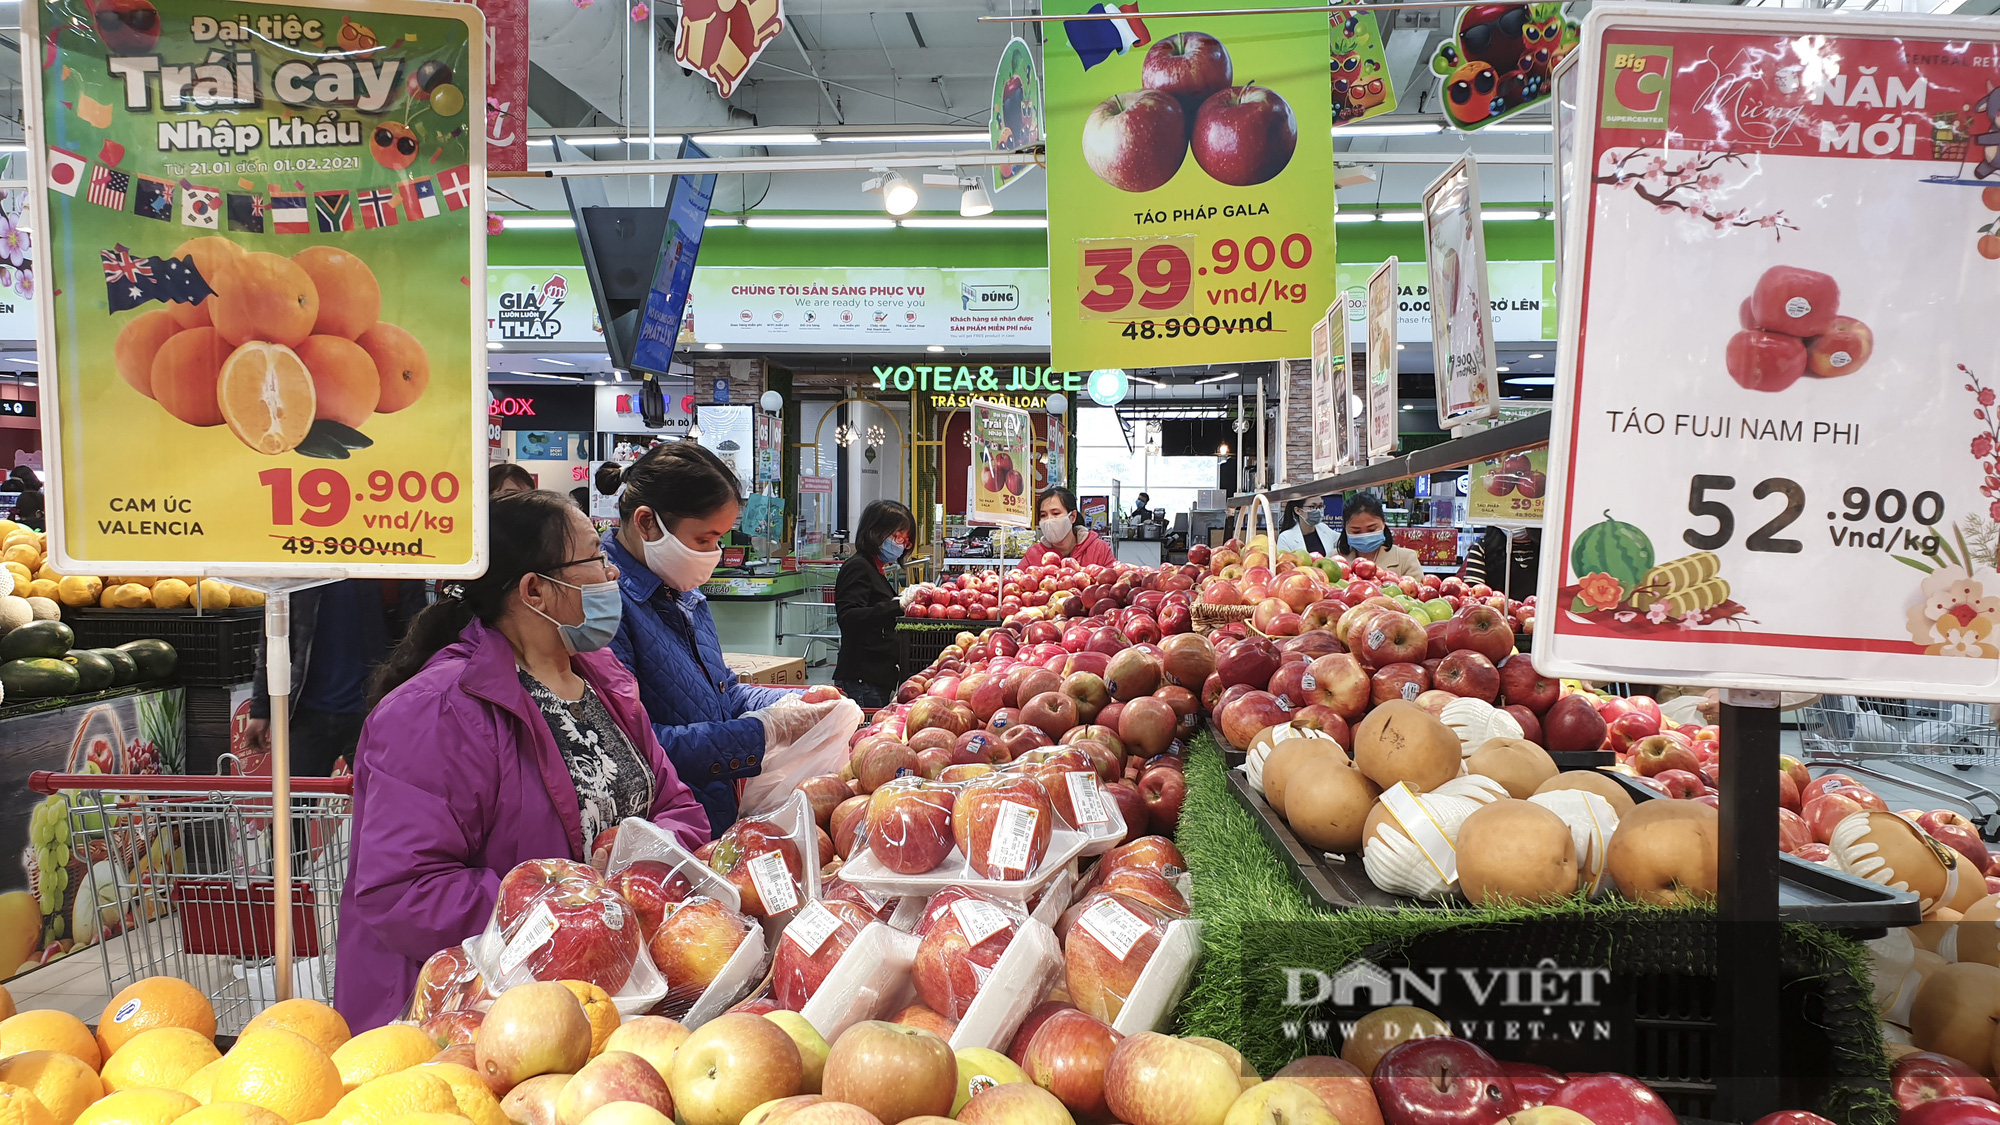 Bất chấp dịch Covid-19, siêu thị vẫn đông nghịt người mua sắm Tết  - Ảnh 11.